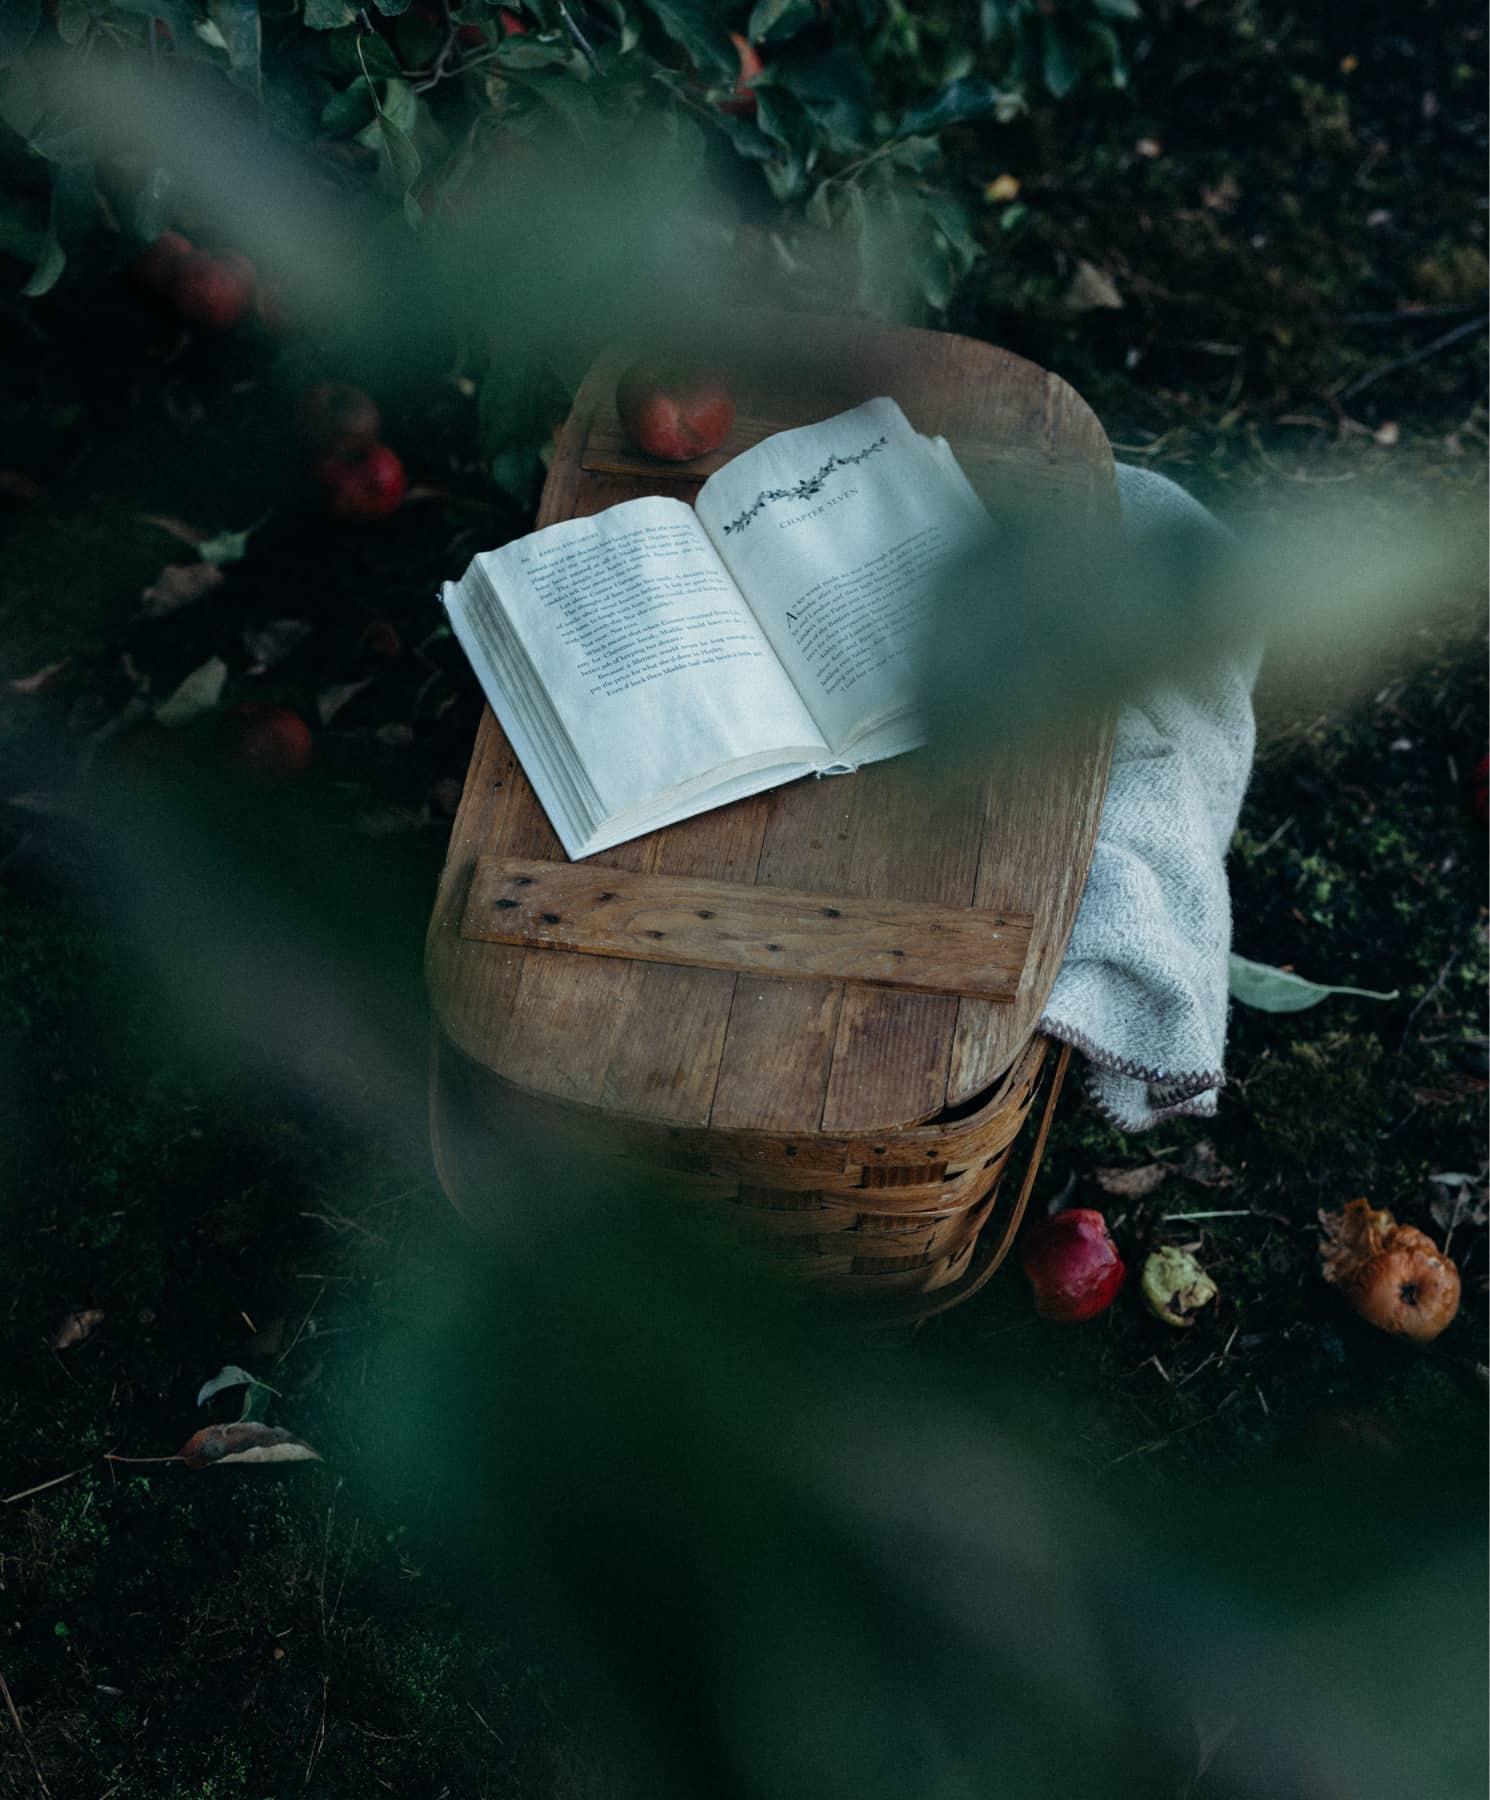 Picknickkorb unter einem Apfelbaum im Herbst mit Buch drauf